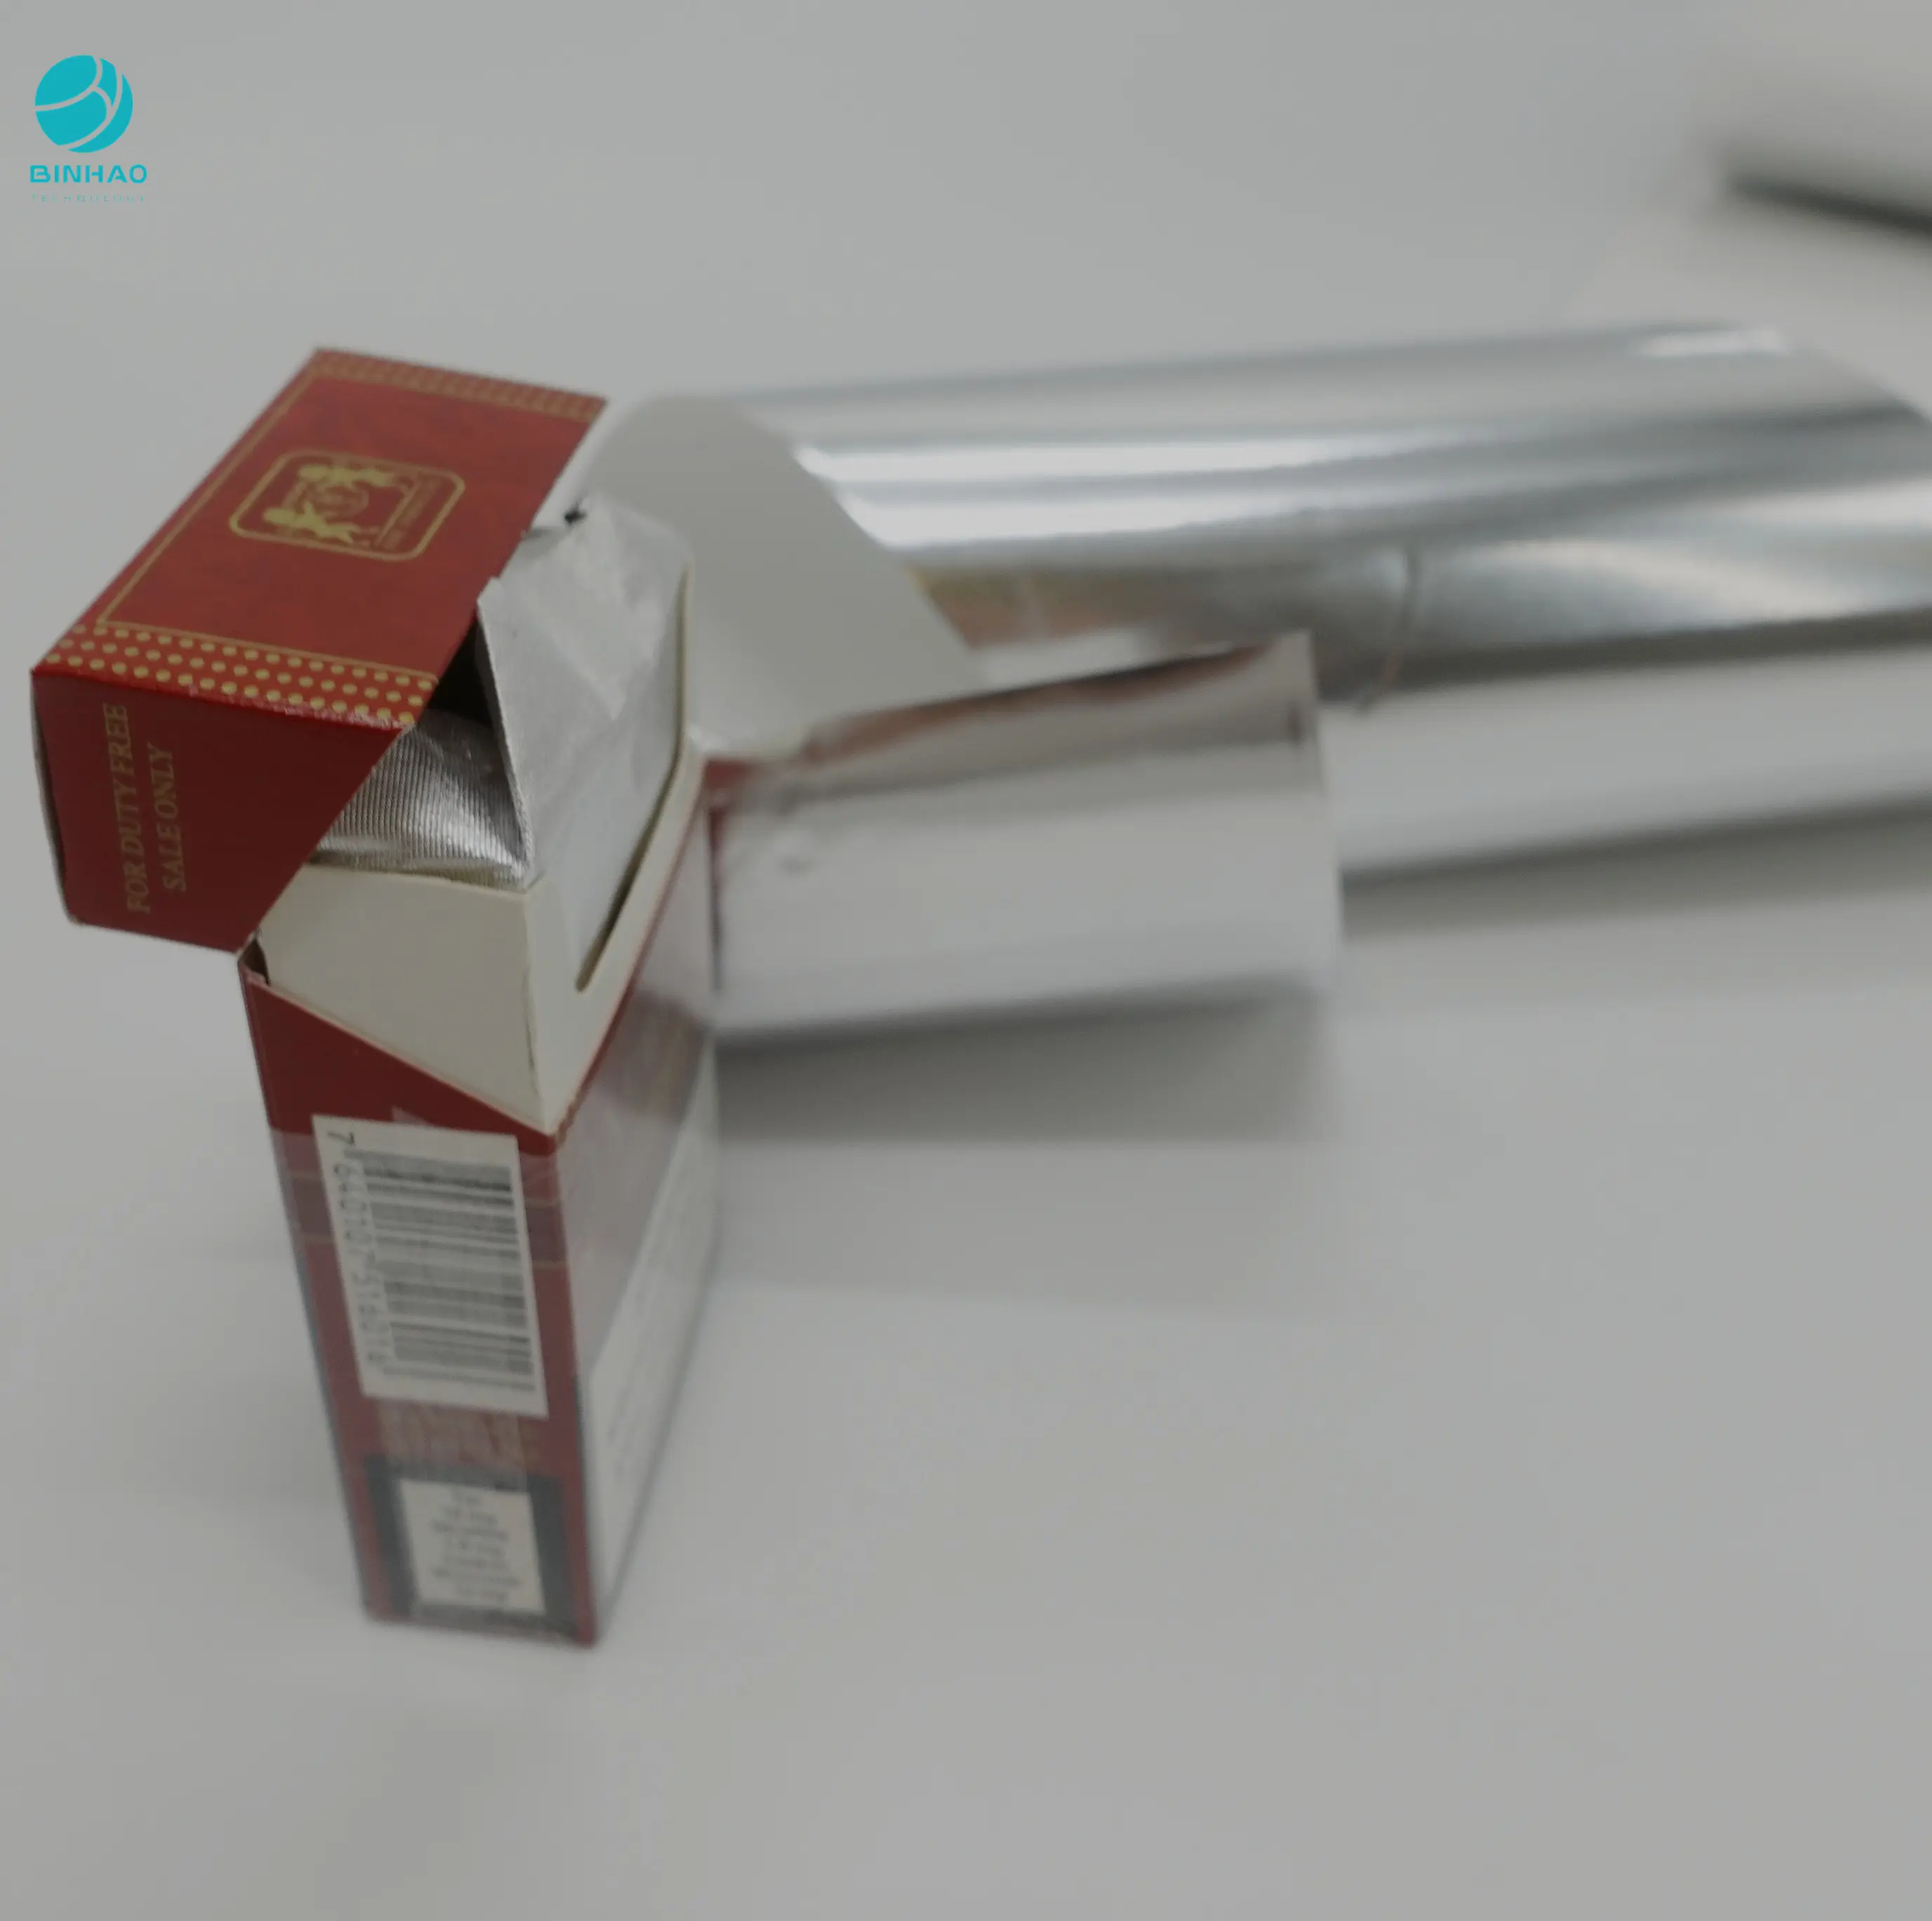 Rolo de papel metálico brilhante de prata, 50g de folha de alumínio para embalagem de cigarro